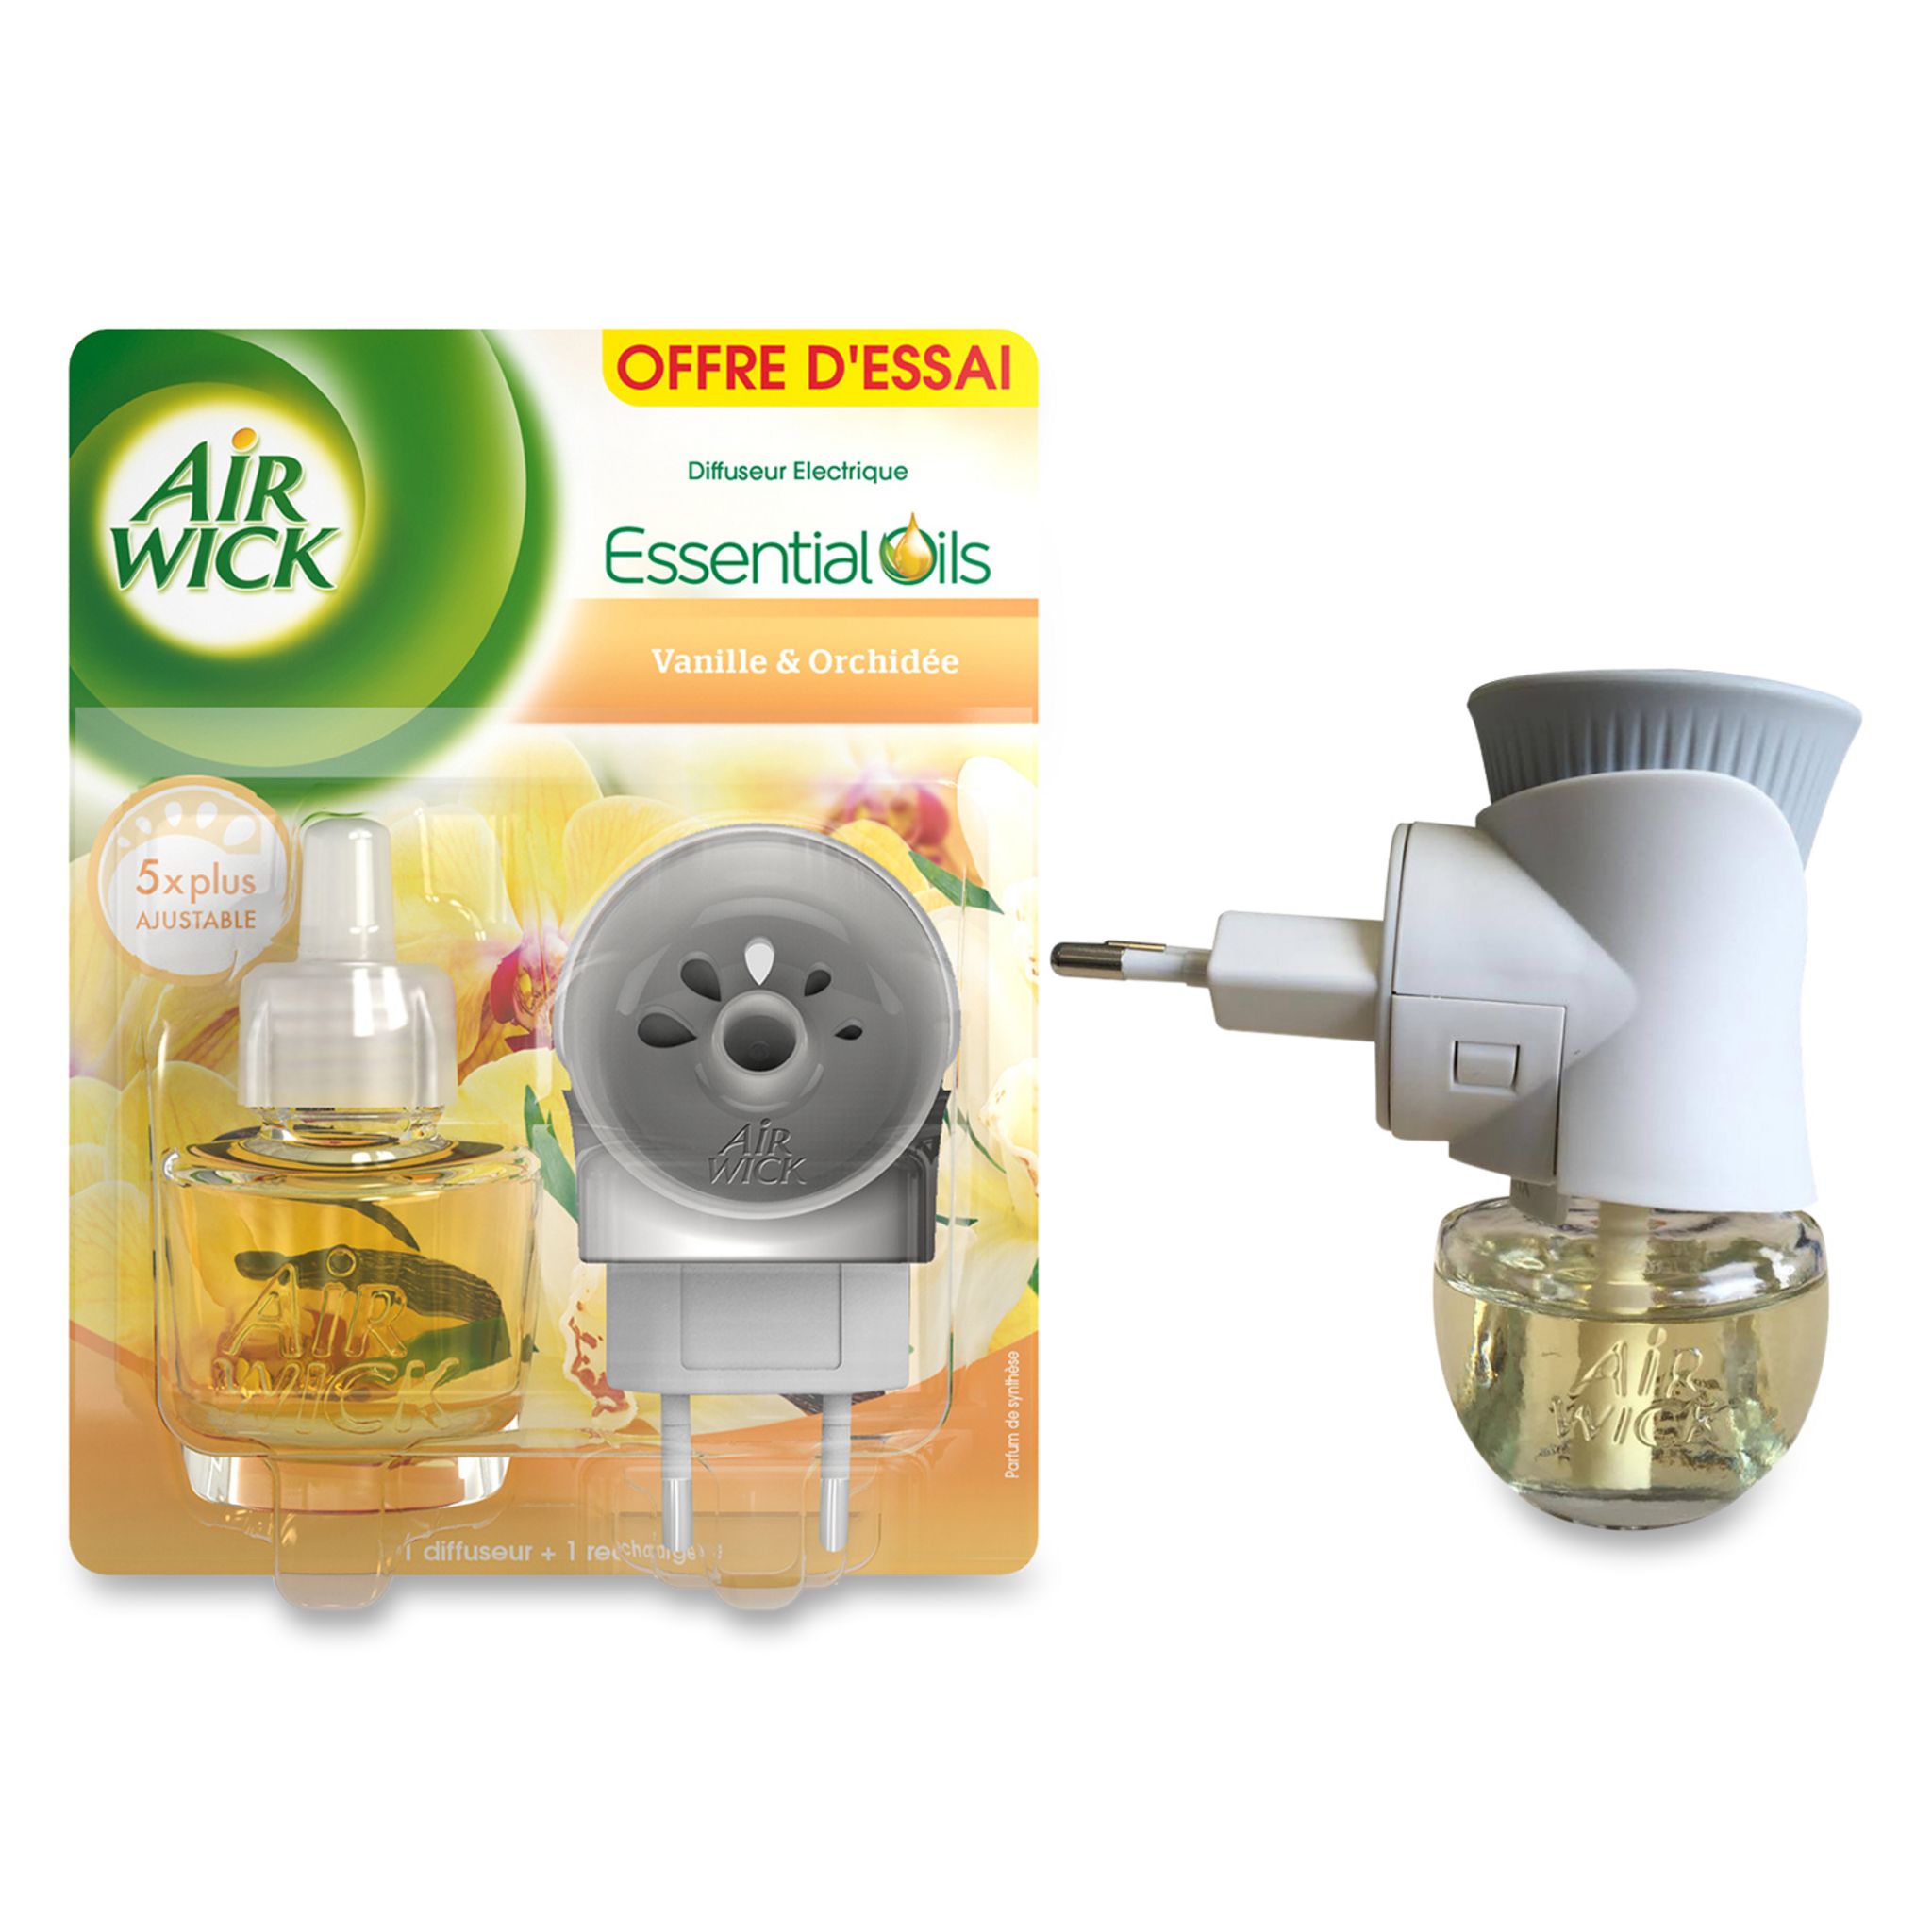 AIR WICK Essential Oils diffuseur electrique vanille orchidée 19ml